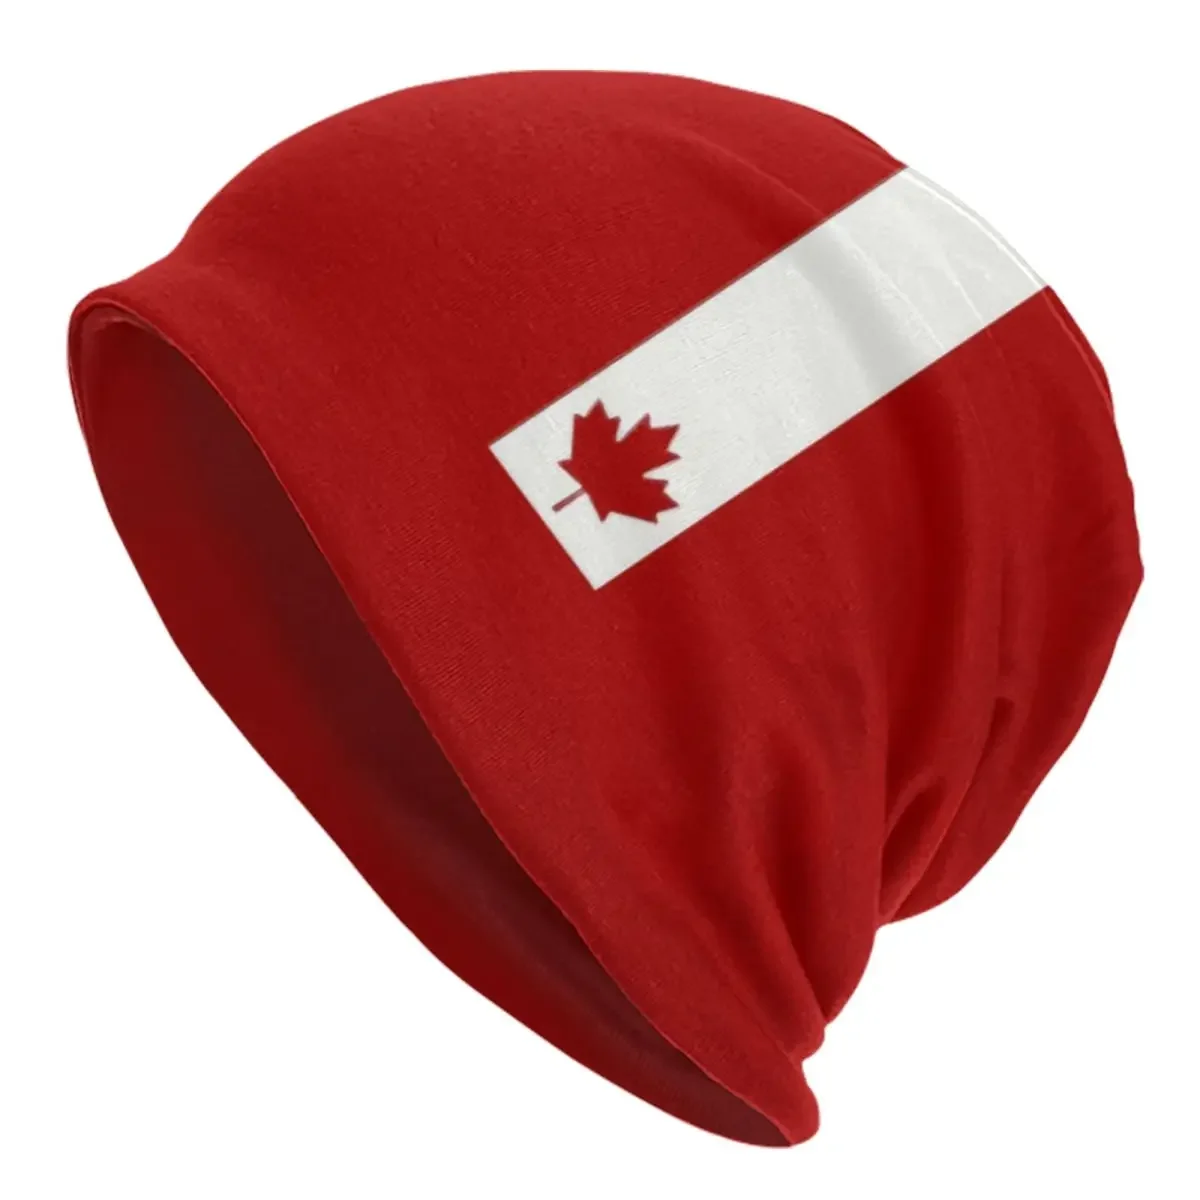 

Минималистичная шапка в стиле Канады, зимняя теплая шапка унисекс, вязаные шапки, модные шапочки в стиле канадской гордости, шапки-бини